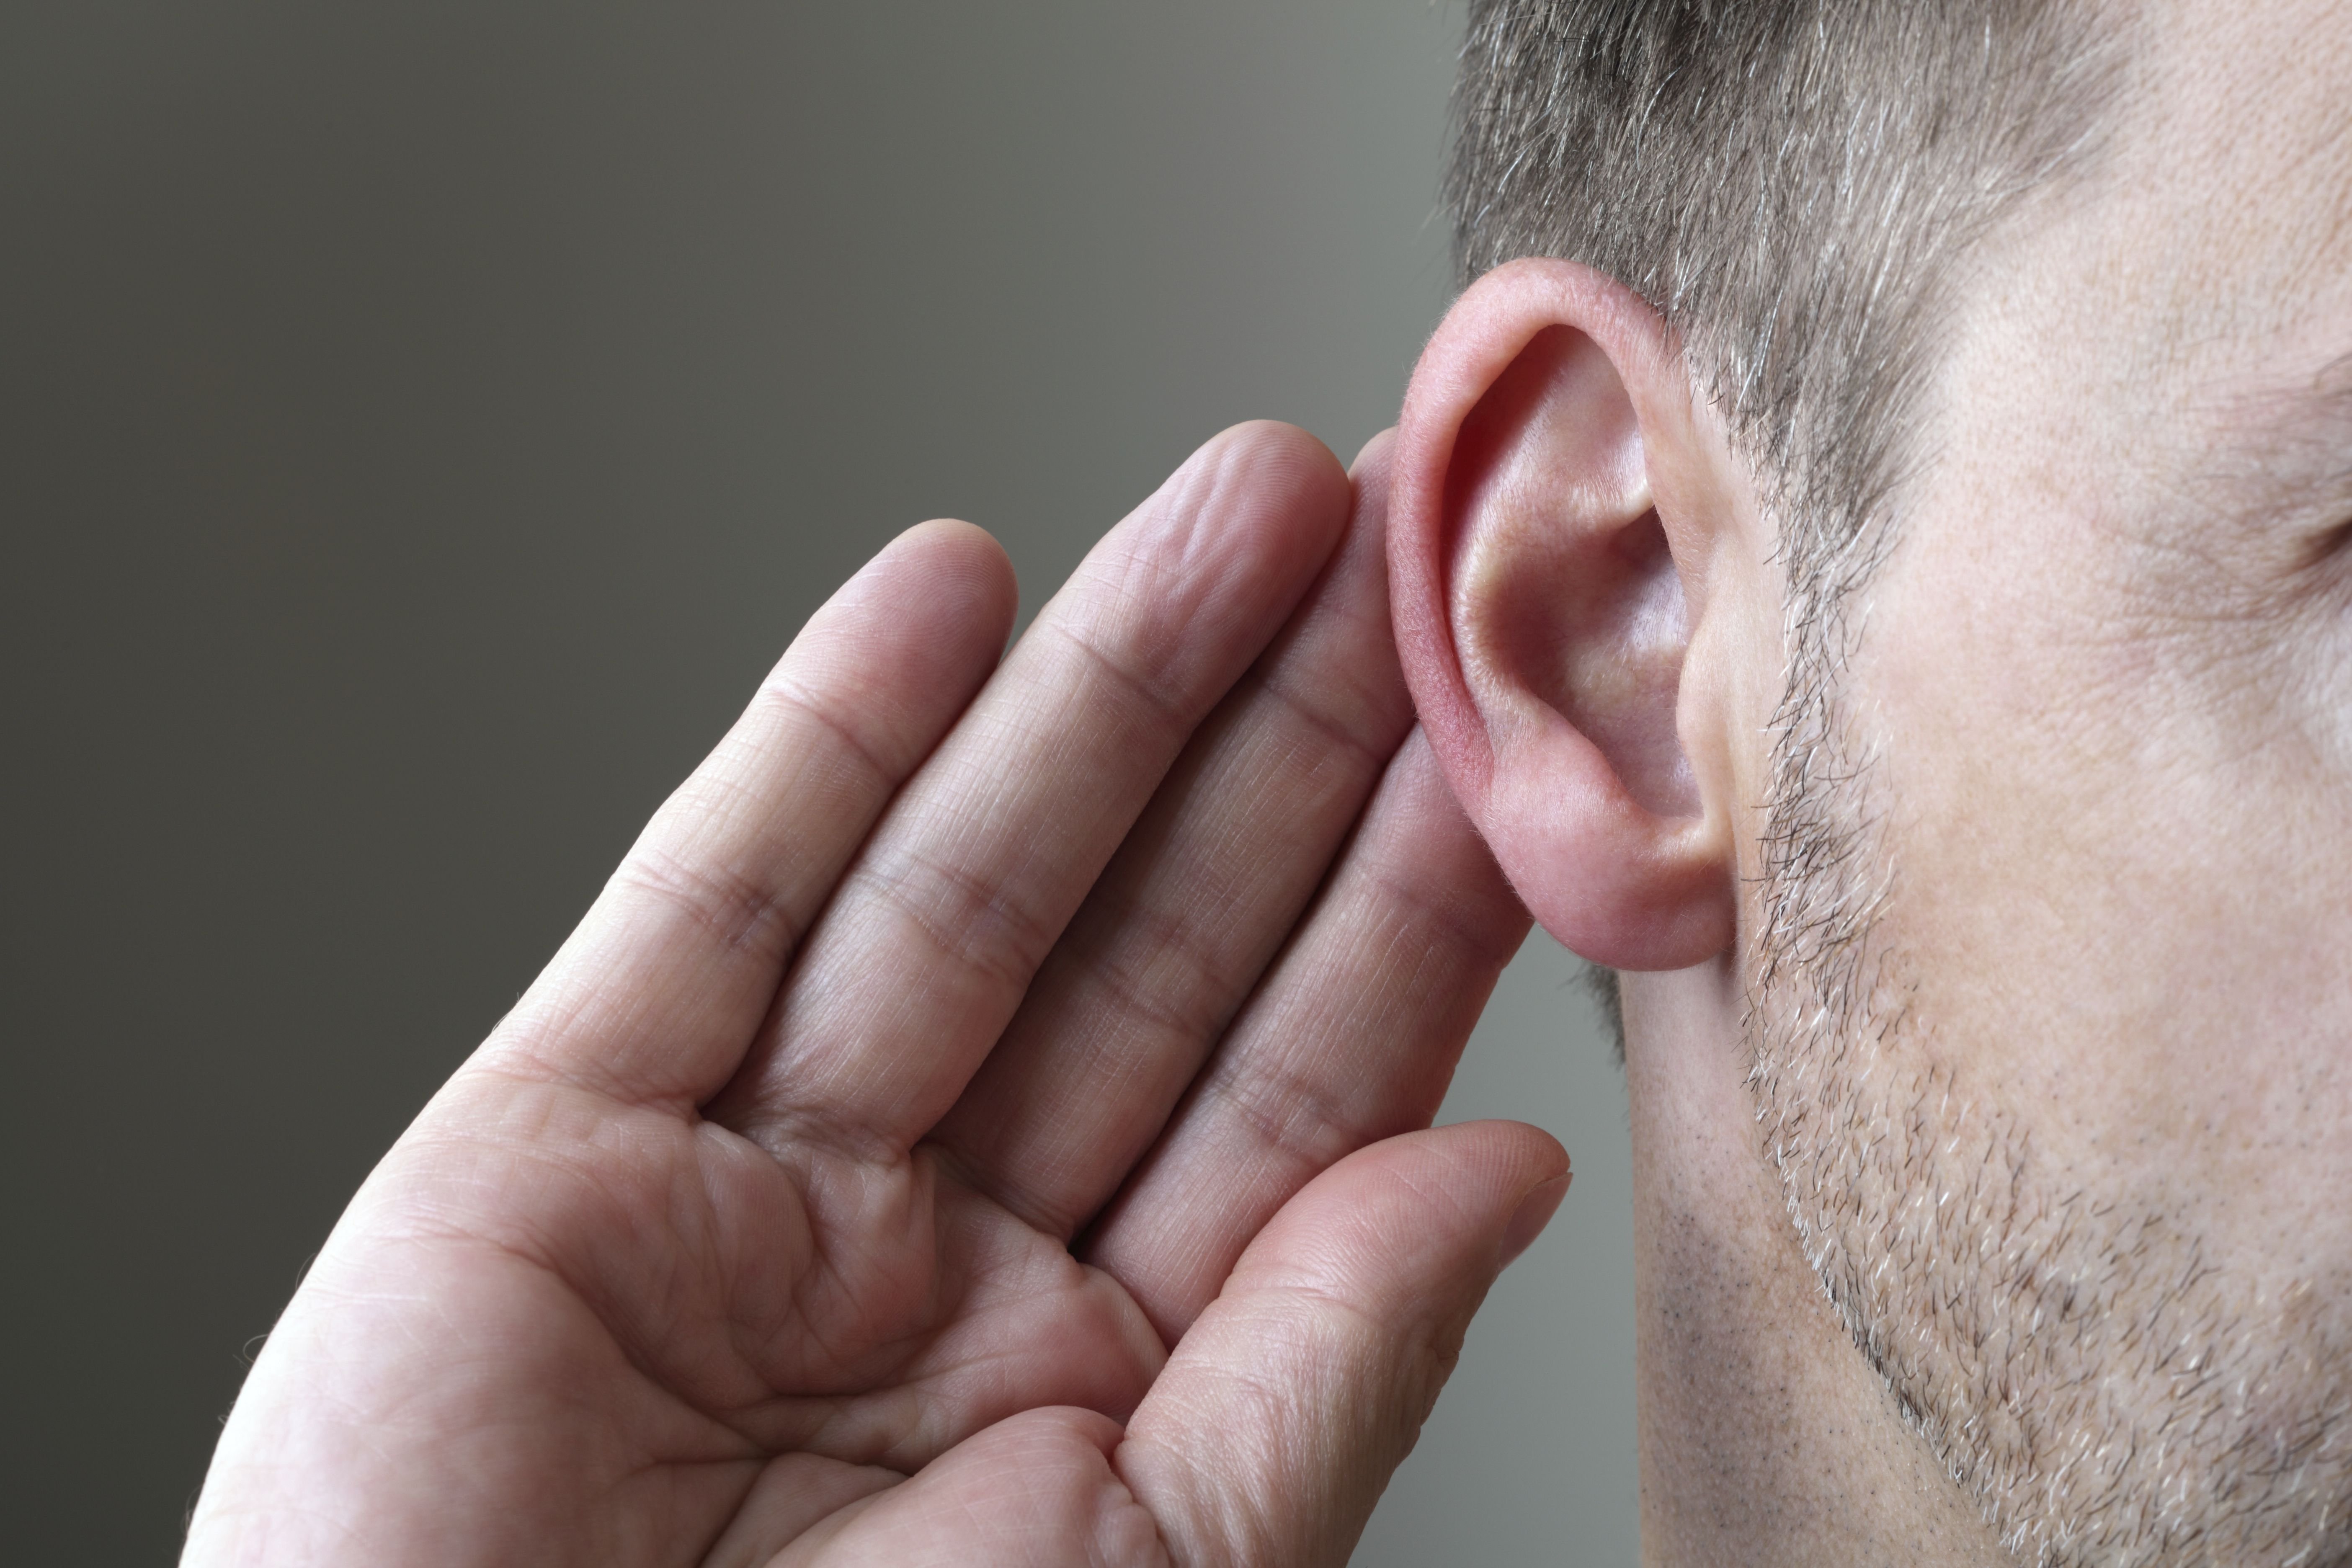 Ear hearing